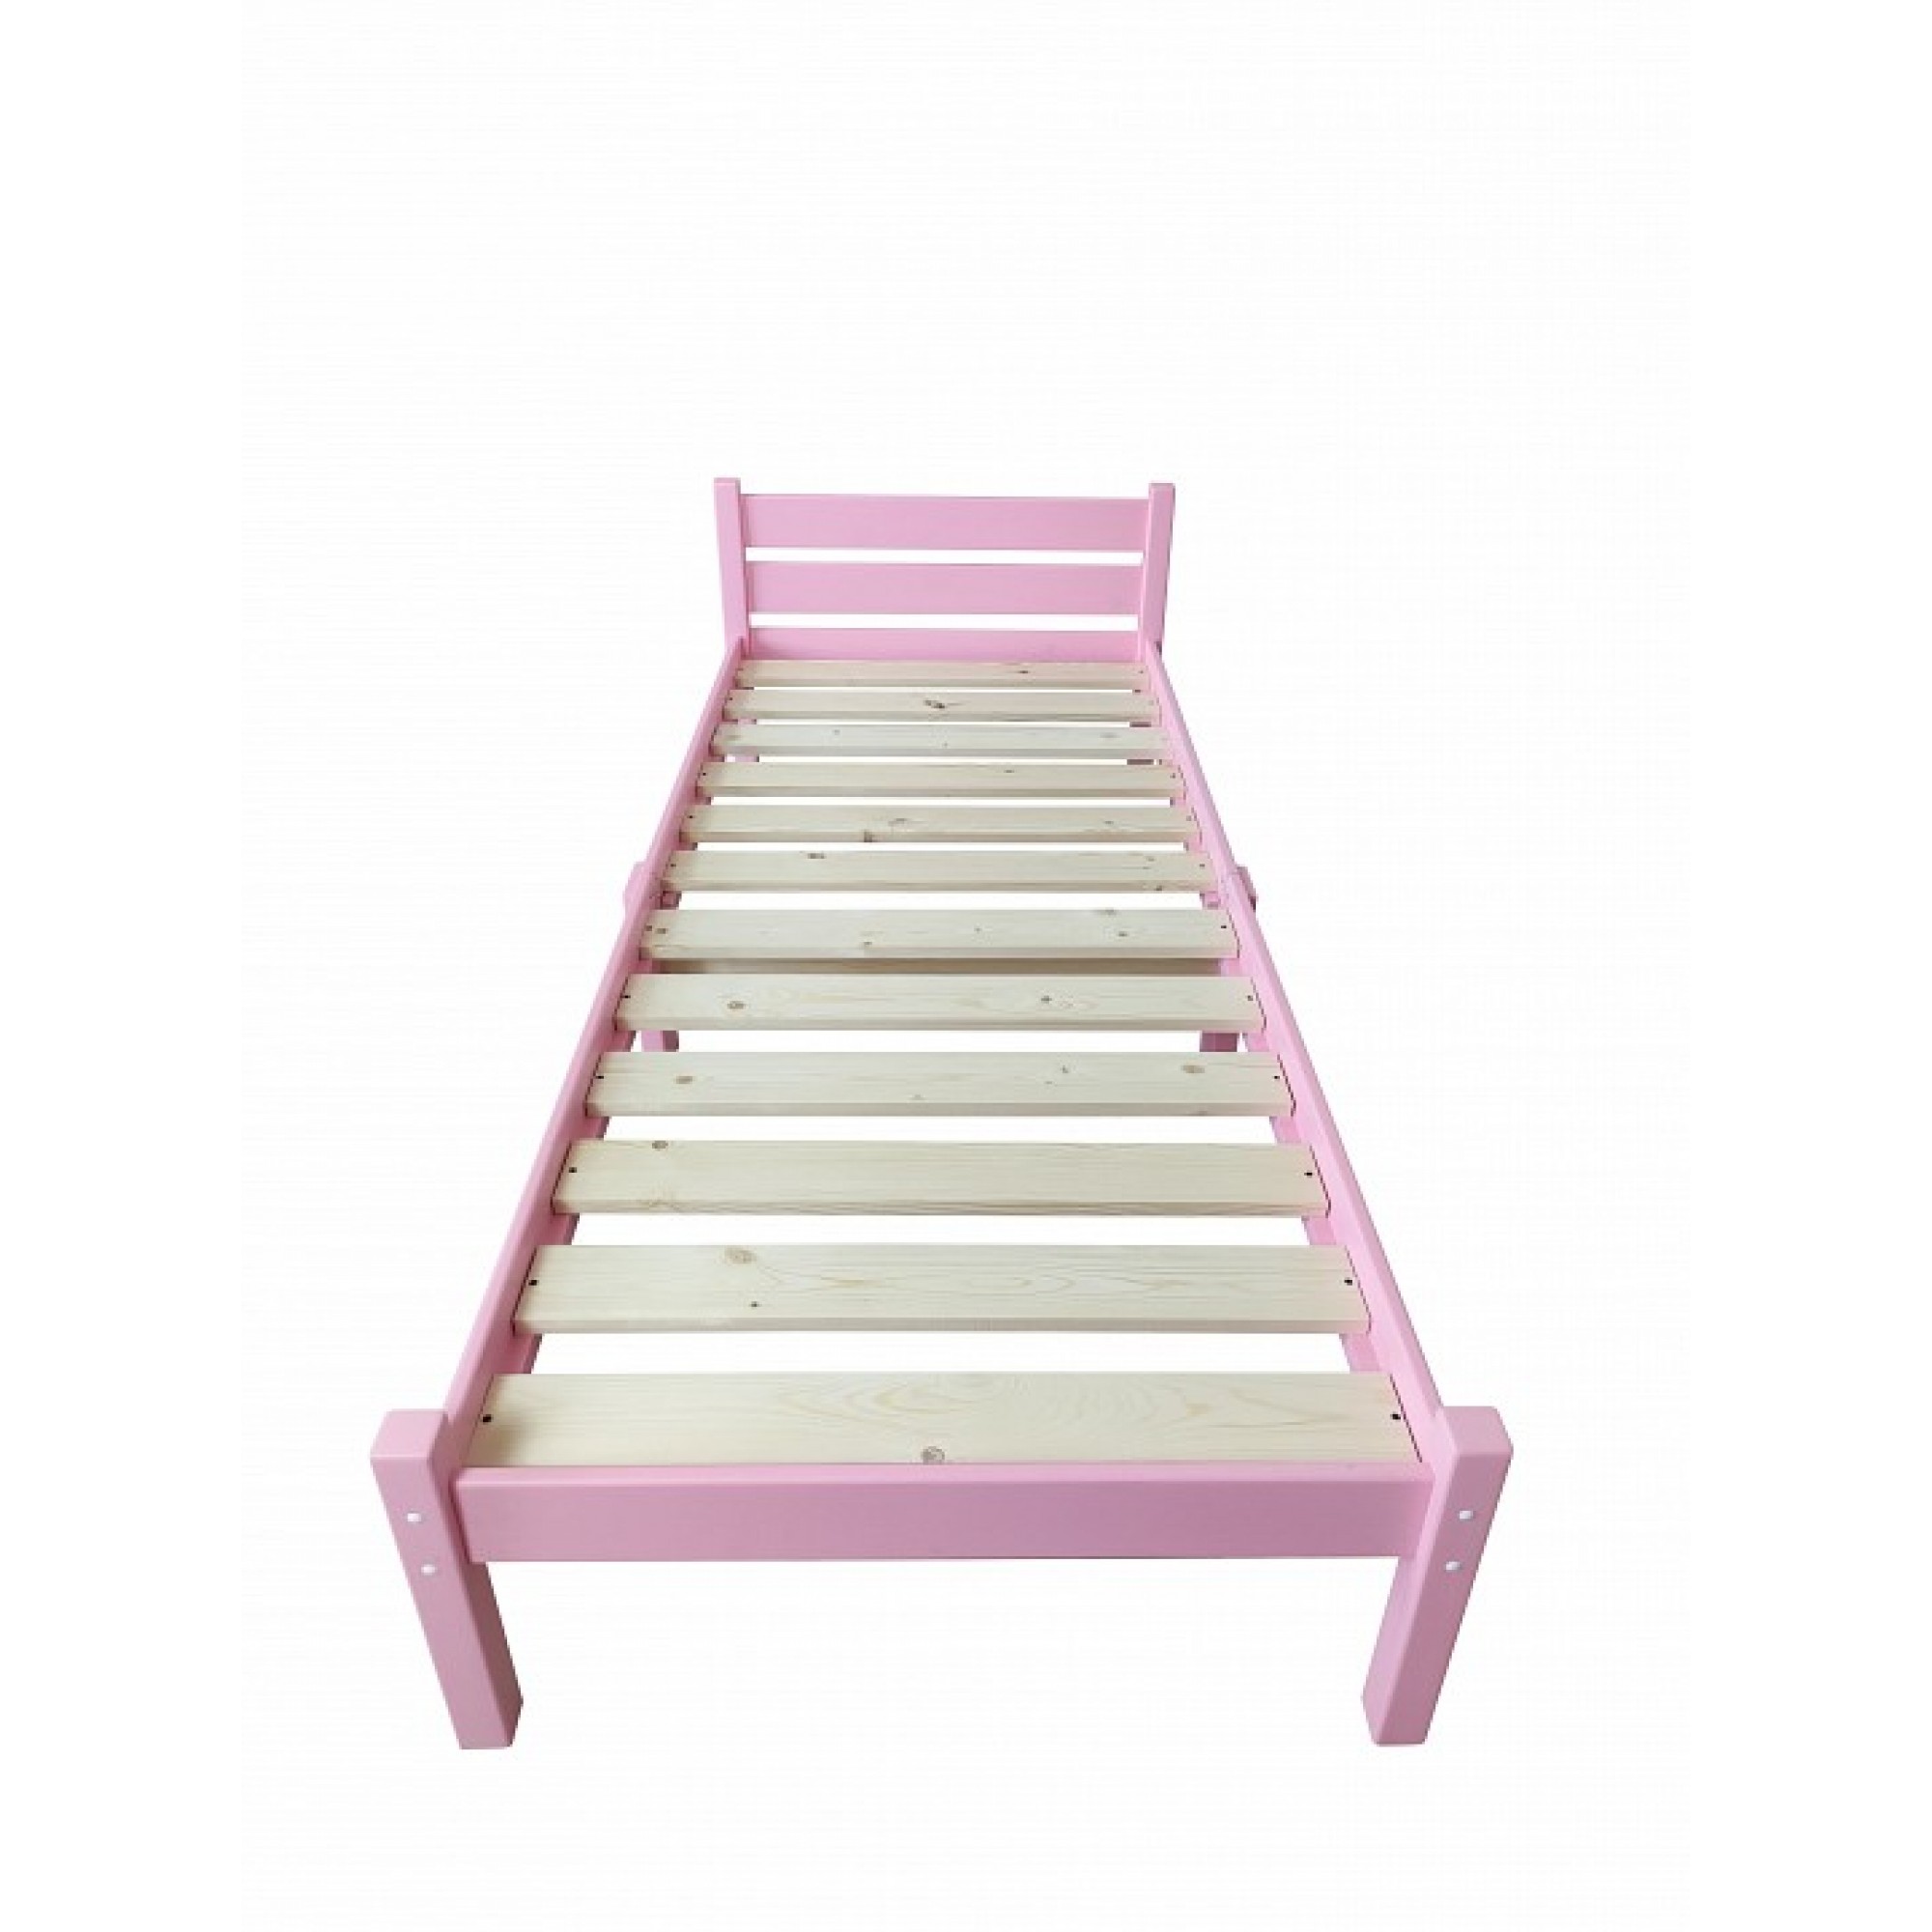 Кровать односпальная Компакт 2000x900 розовый    SLR_kompakt90roz